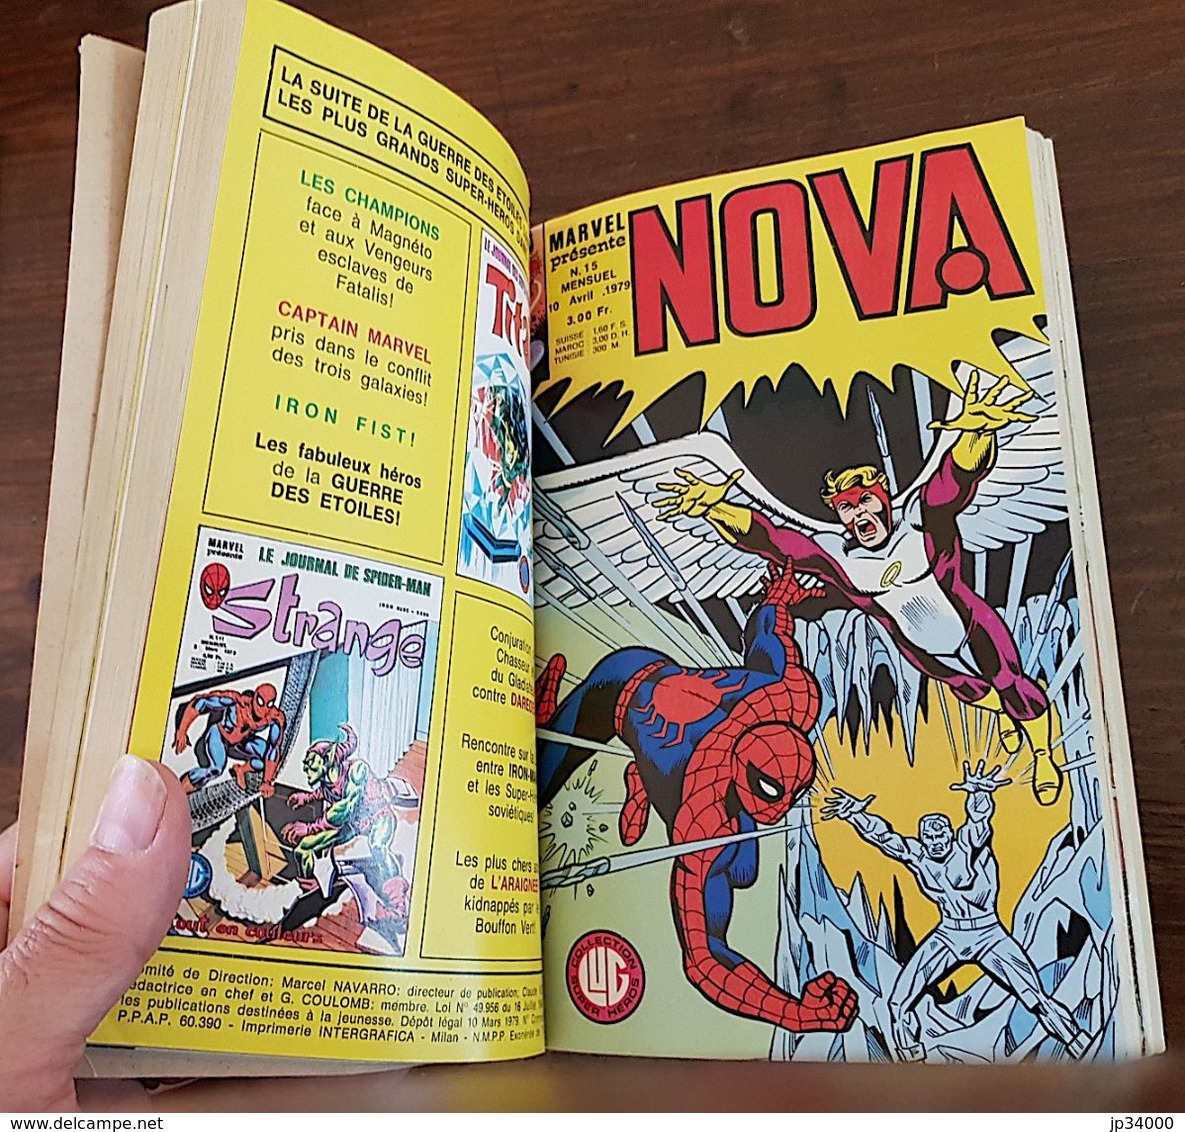 NOVA Album N°4 Contient Nova 13+14+15+16. Edité Chez LUG 1979. Le Surfeur D'argent, L'araignée (Strange, Marvel) Etc. - Nova